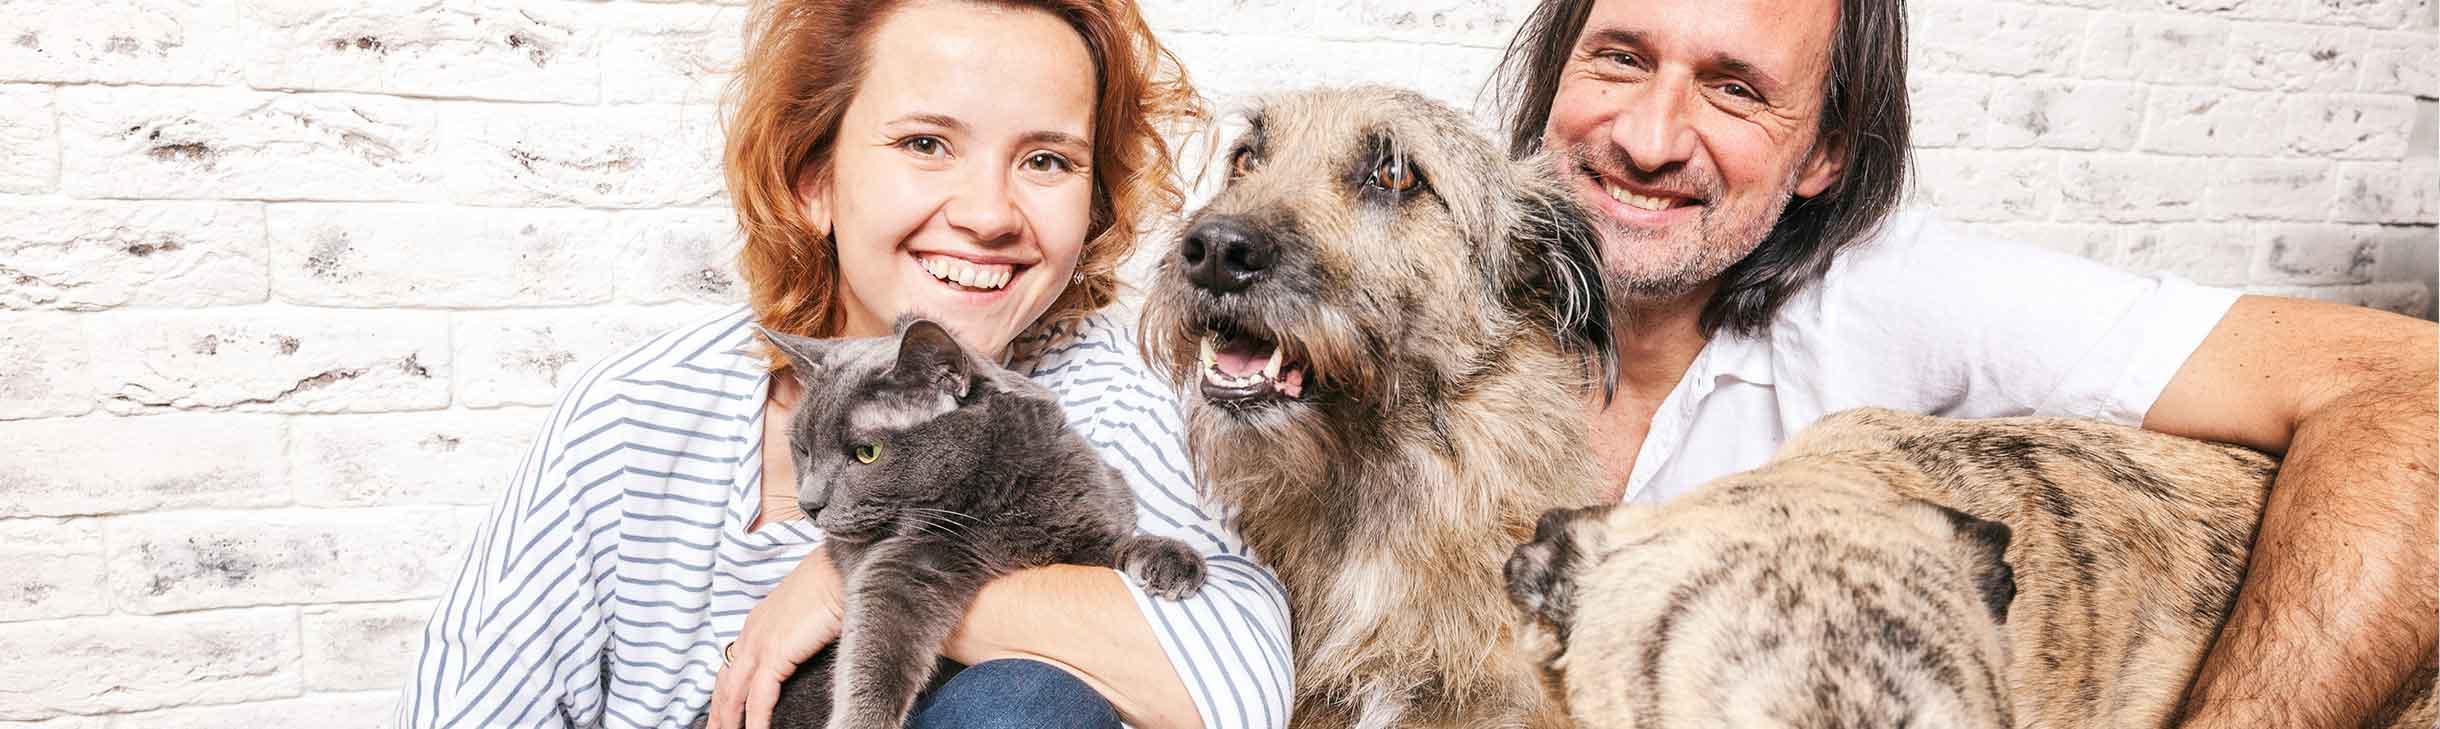 Familie mit Hund und Katze - ein tierisch gutes Team.